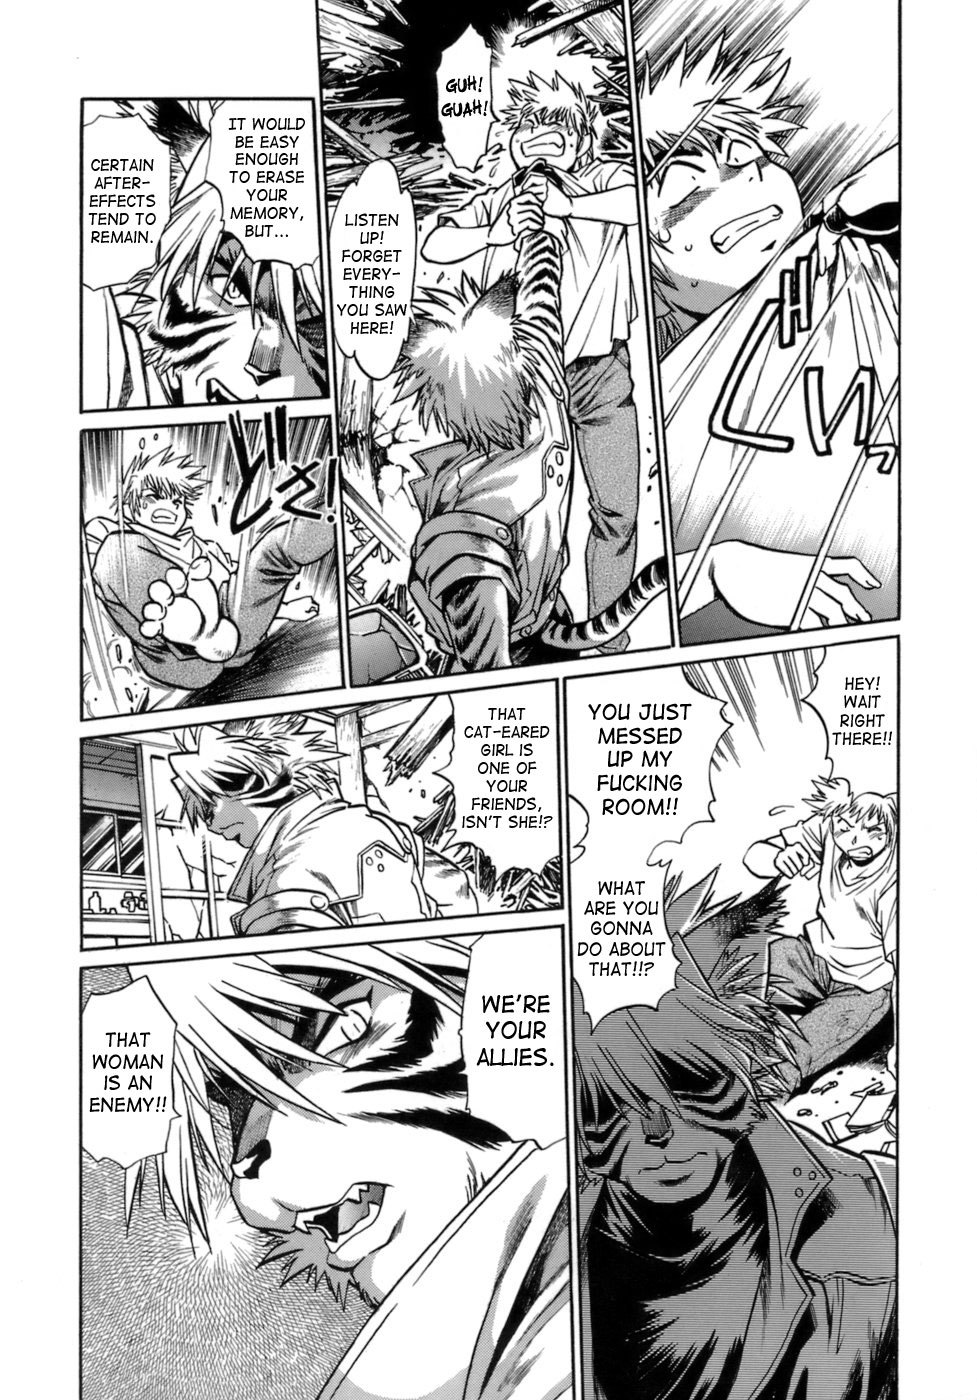 Tail Chaser Vol.1 18 hentai manga